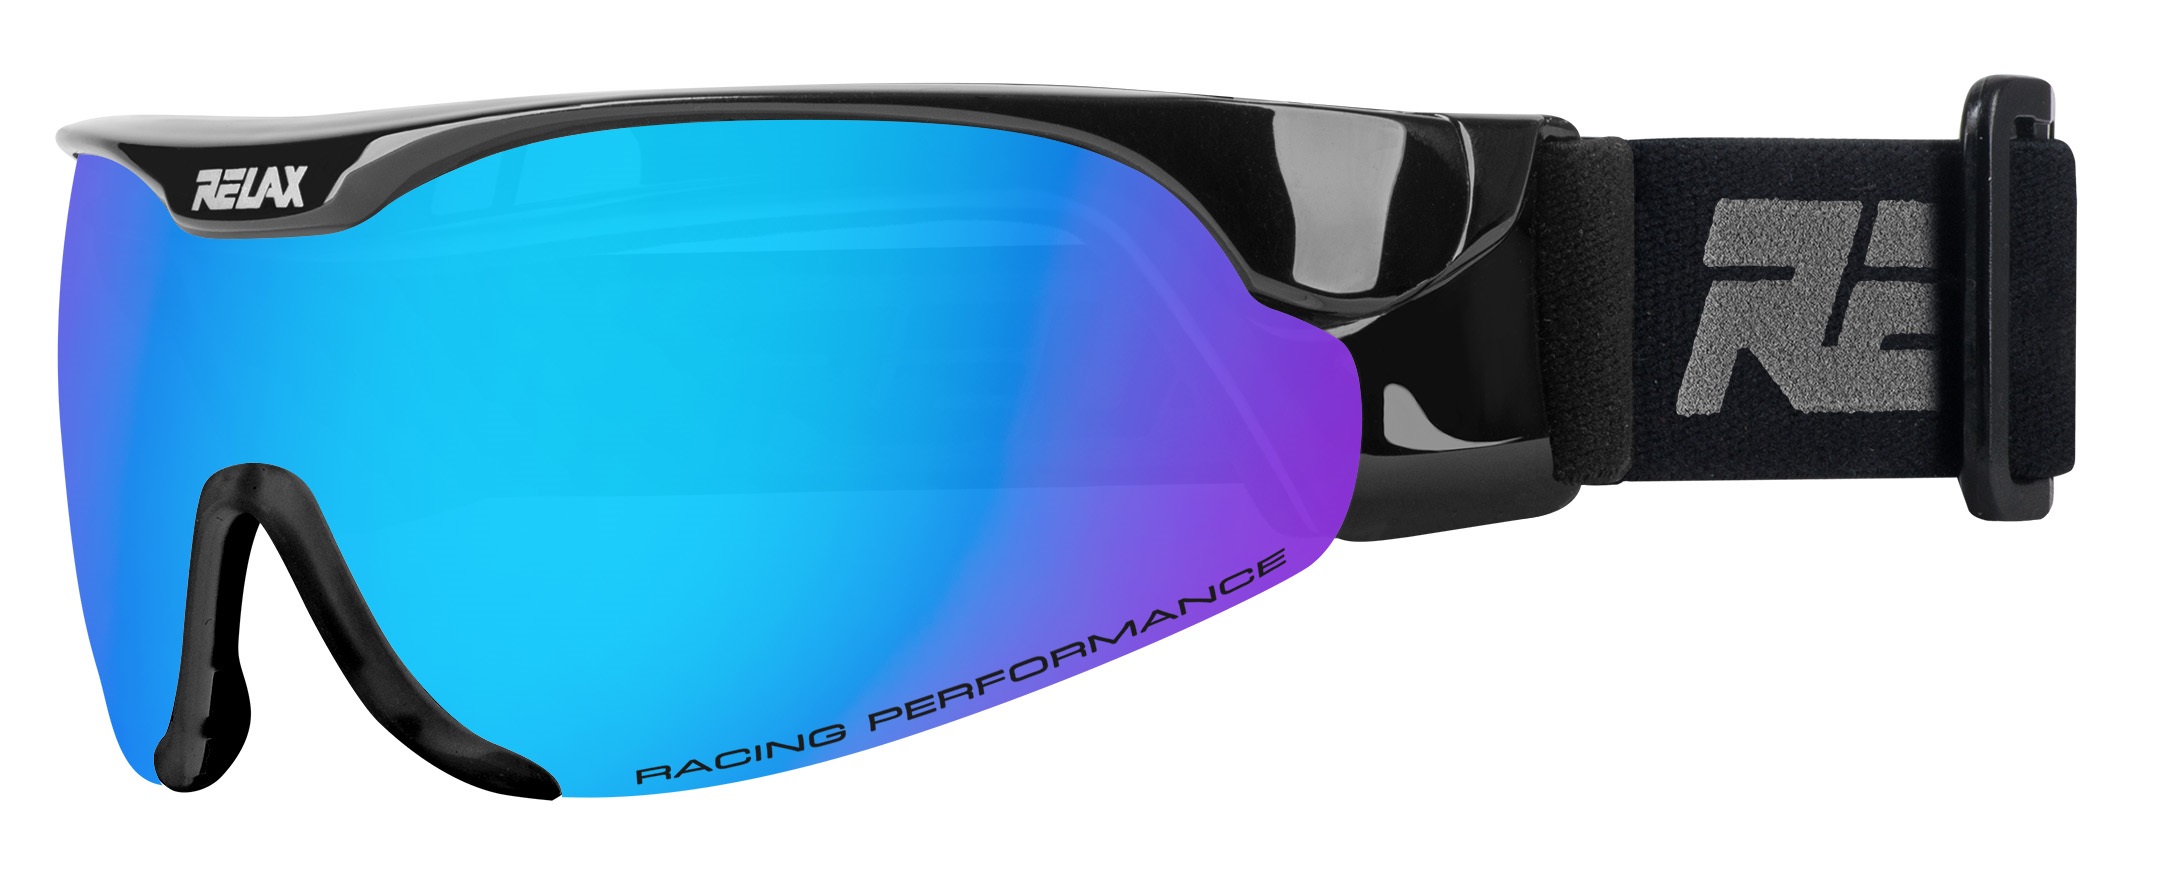 Běžkařské brýle Relax Cross Barva: černá